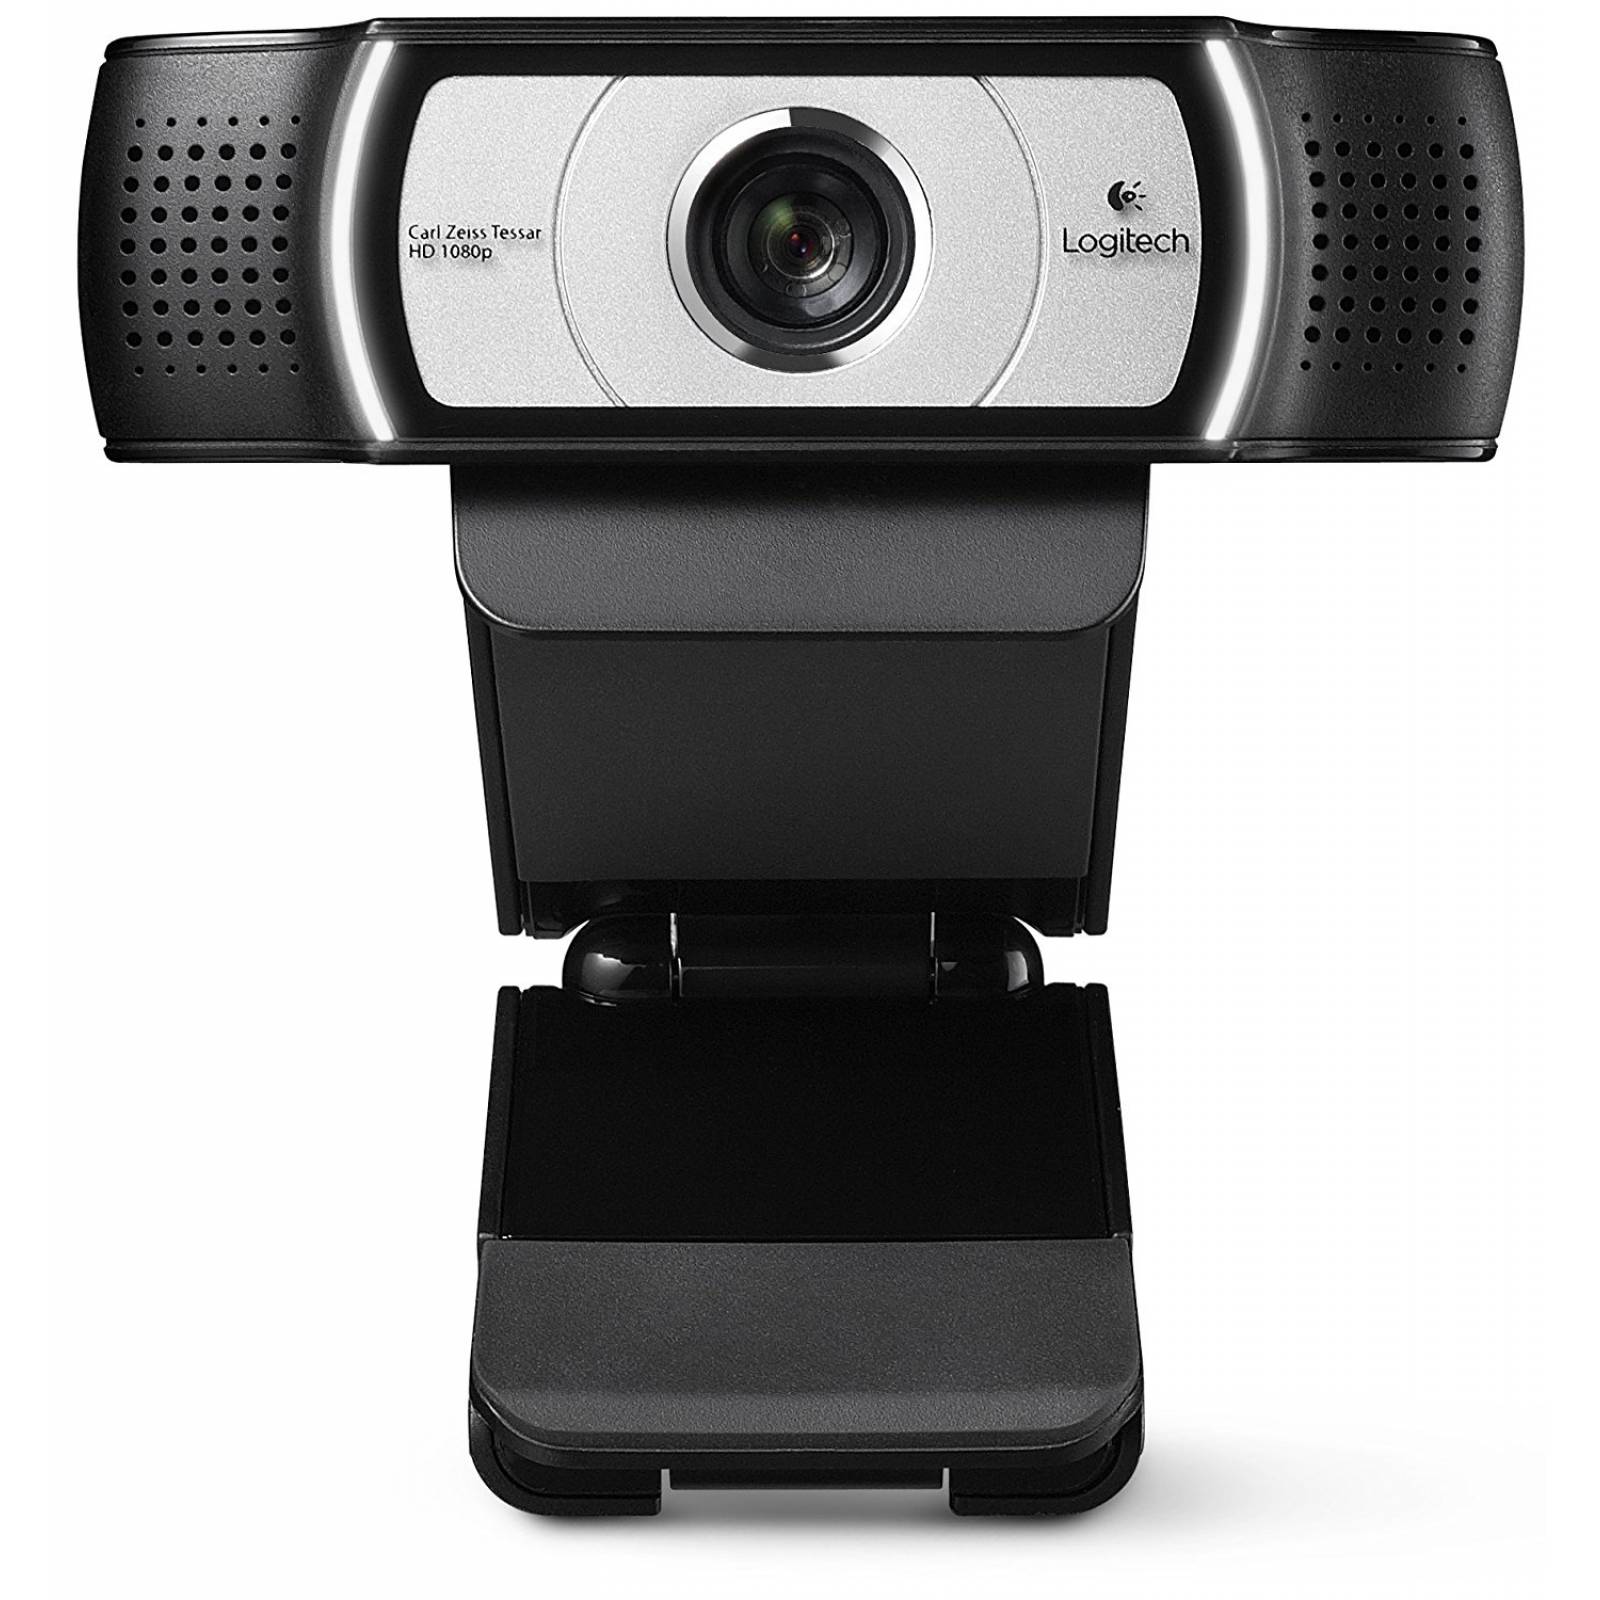 B:Logitech C930e 1080p HD Video Webcam - vista extendida 90 gr